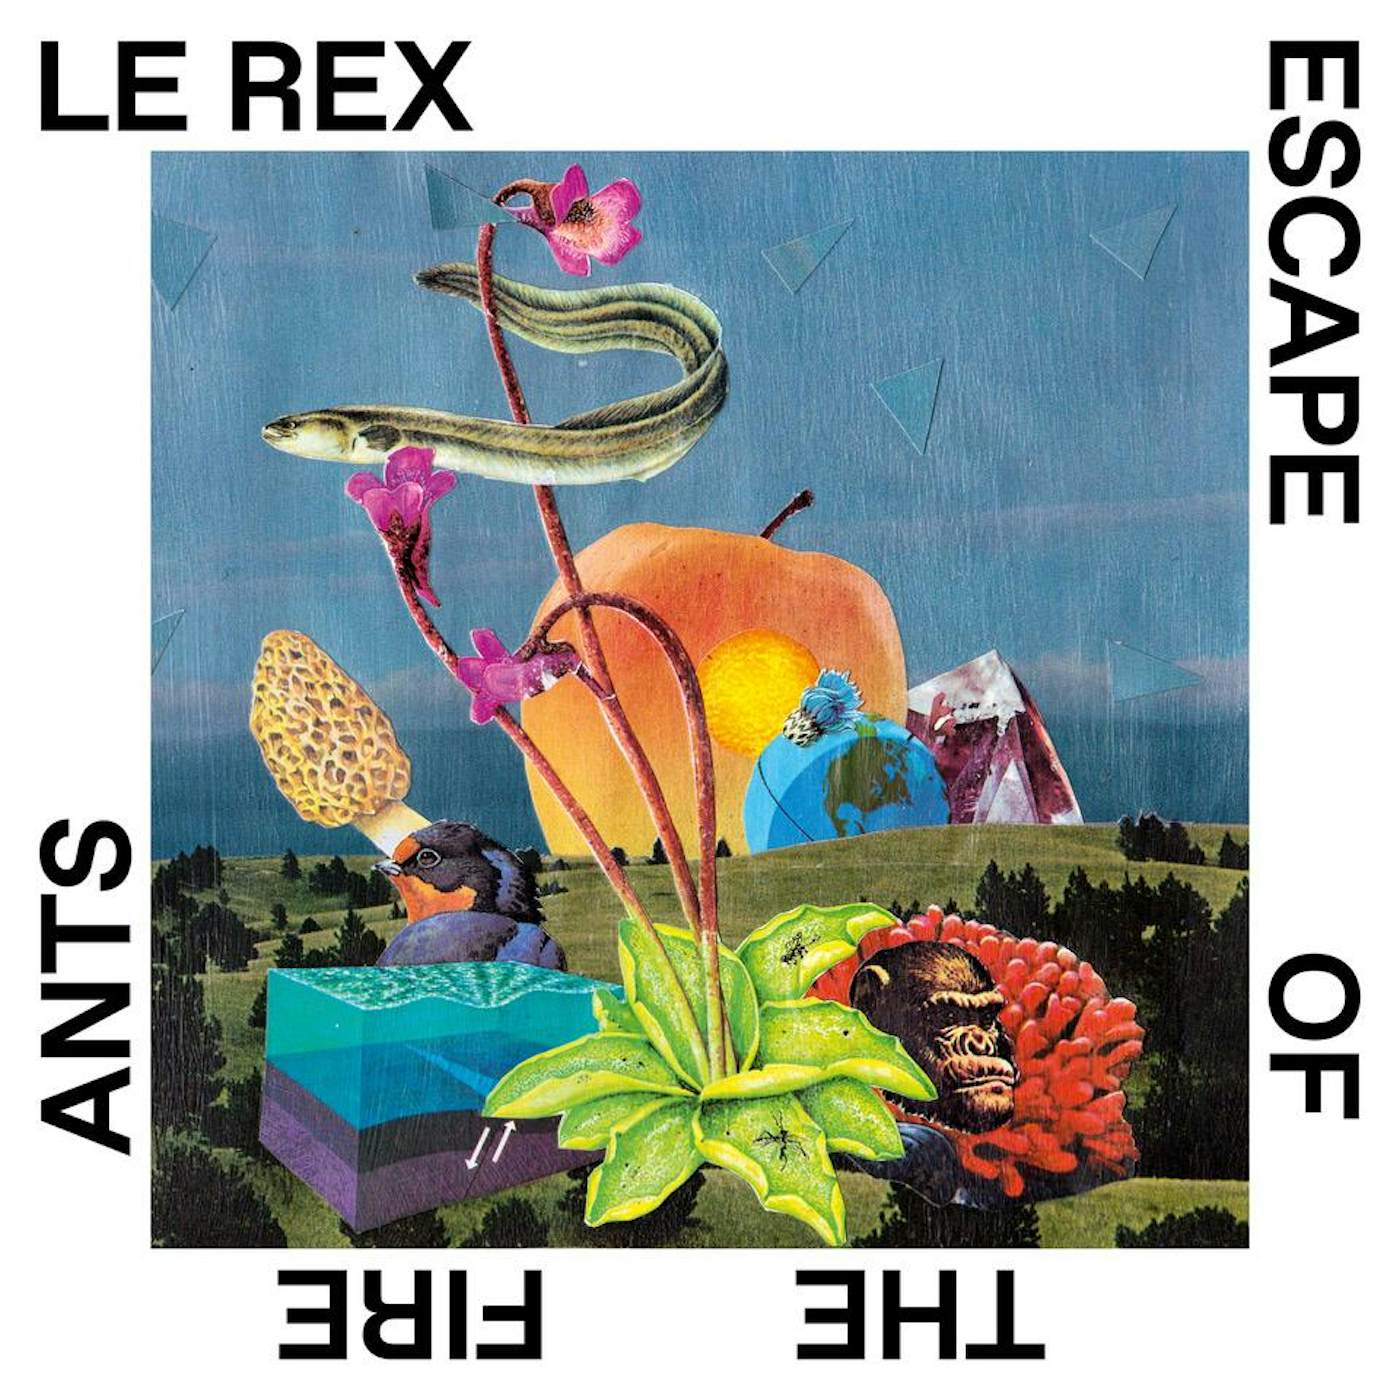 Le Rex ESCAPE OF THE FIRE ANTS CD